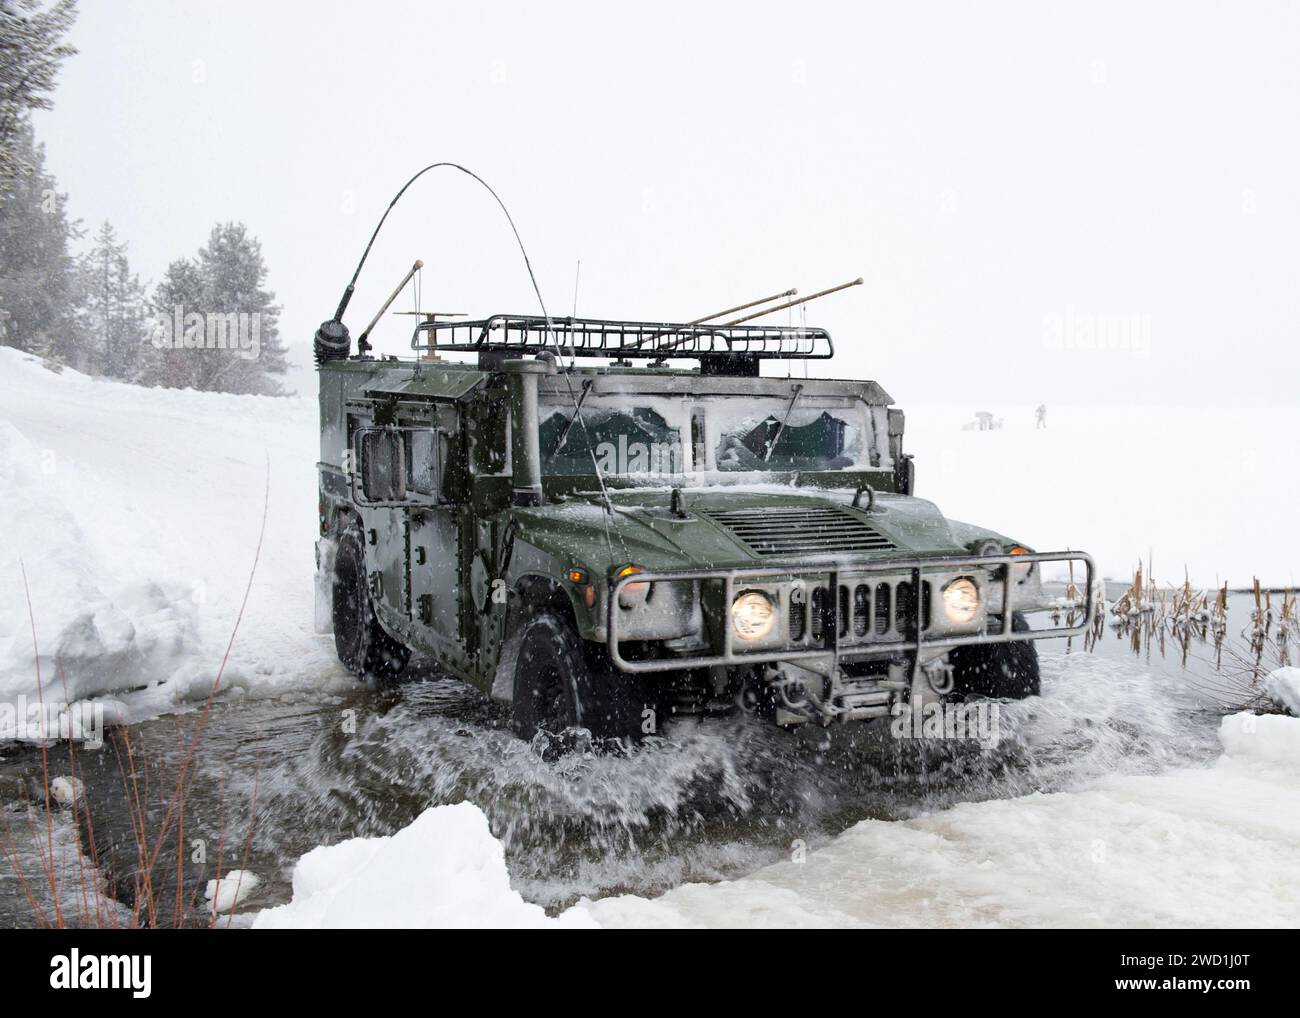 Un véhicule militaire traversant une rivière par temps enneigé. Banque D'Images